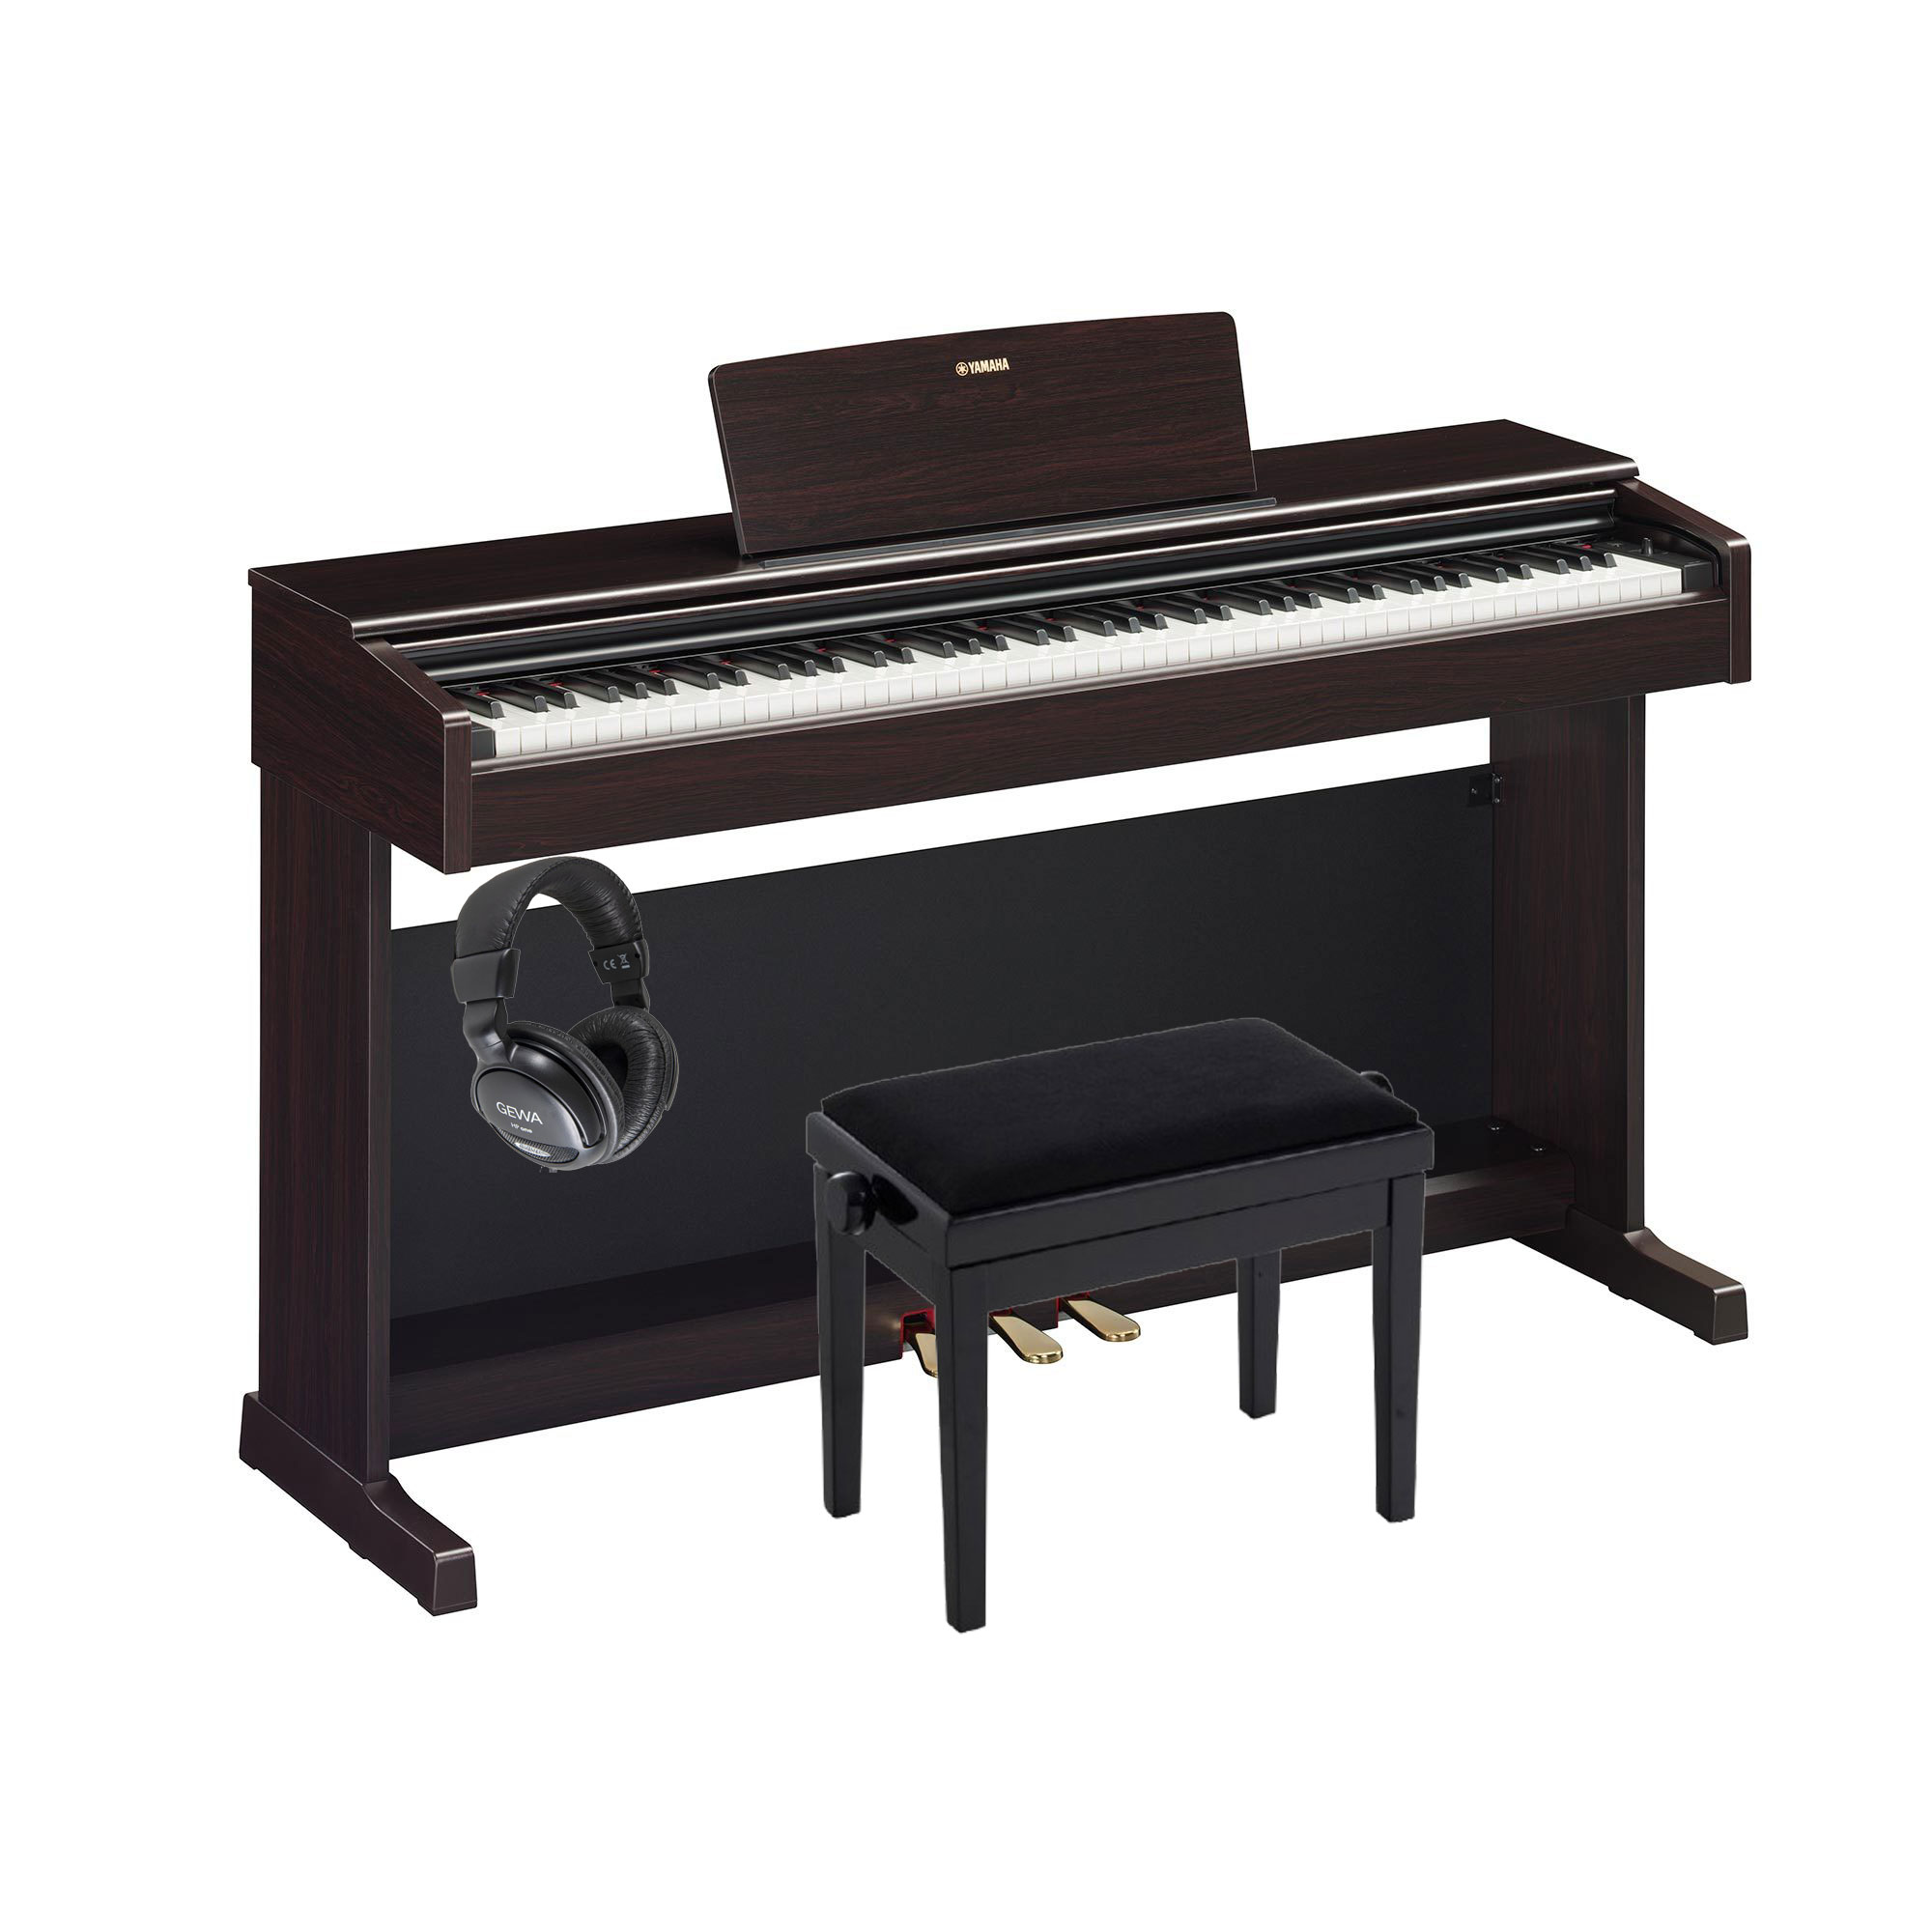 Pack piano Digital Yamaha Arius YDP-145 con banqueta y auriculares